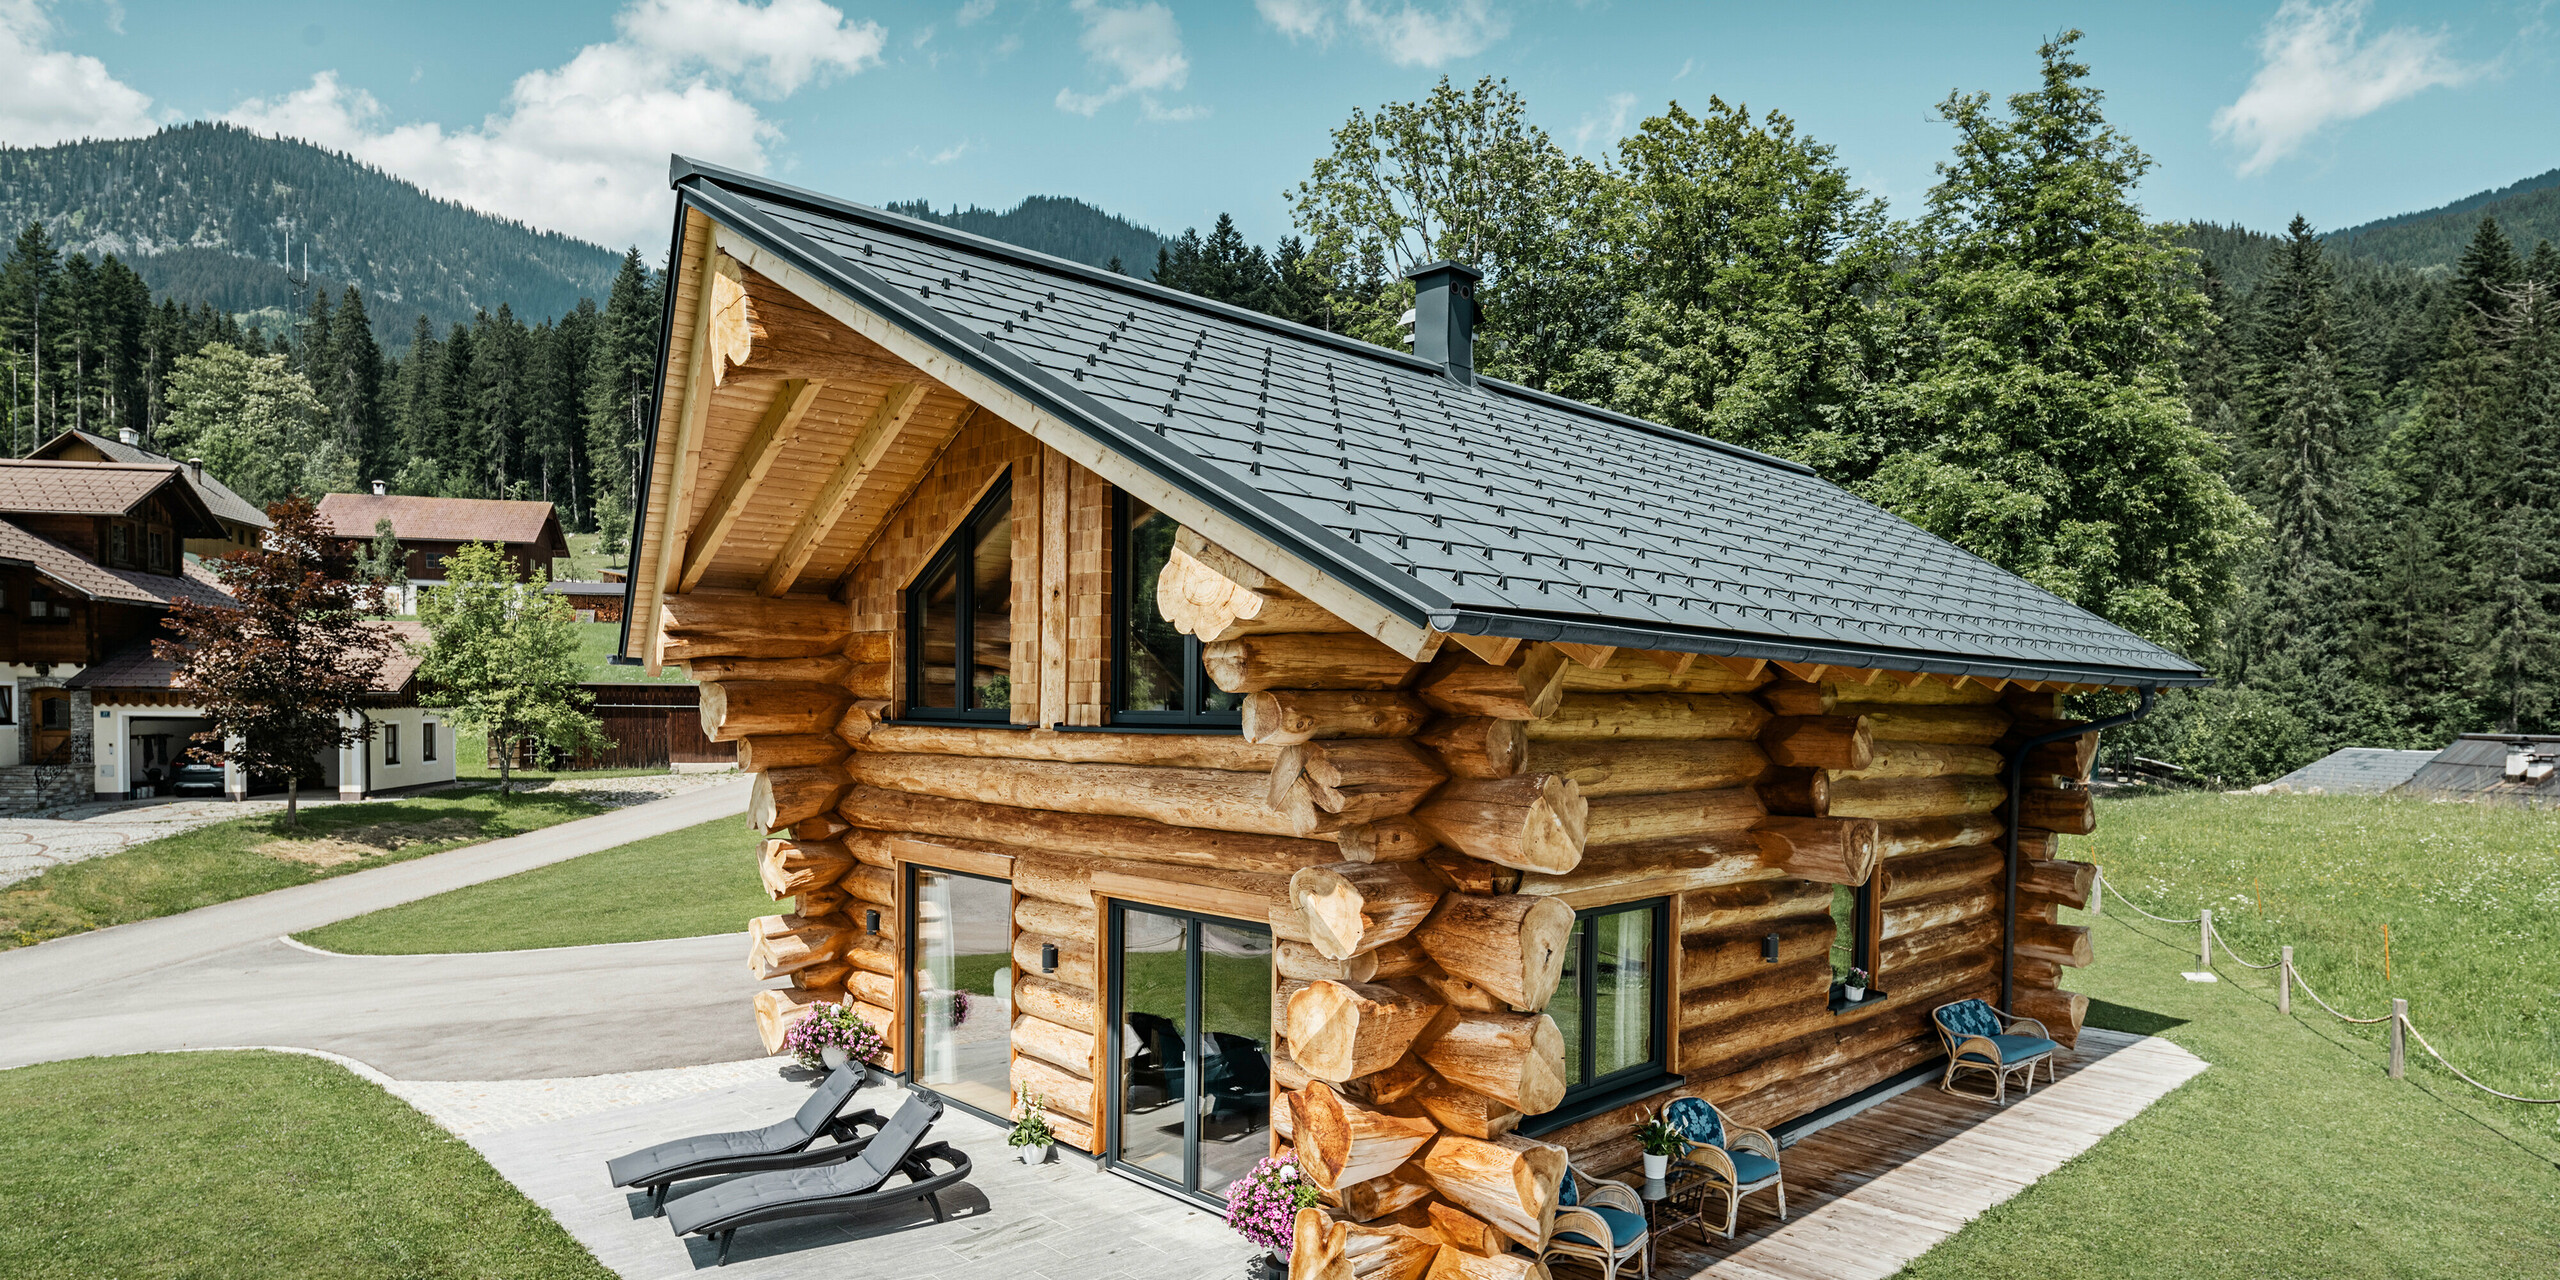 Rustikalna brunarica v kraju Gosau v Avstriji, opremljena s trpežnimi PREFA strešnimi ploščami R.16 v P.10 antracitni barvi. Aluminijaste strešne plošče majhnega formata so harmonično vpete v naravno pokrajino z bujno zelenimi drevesi in slikovitimi gorami v ozadju. Visokokakovostni strešni sistem v antracitni barvi je v močnem kontrastu s tradicionalnimi stenami iz lesenih hlodov in je optimiziran glede odpornosti na vremenske vplive in vzdržljivost. Ta slika ponazarja popolno kombinacijo tradicionalne gradnje in sodobnega dizajna PREFA.